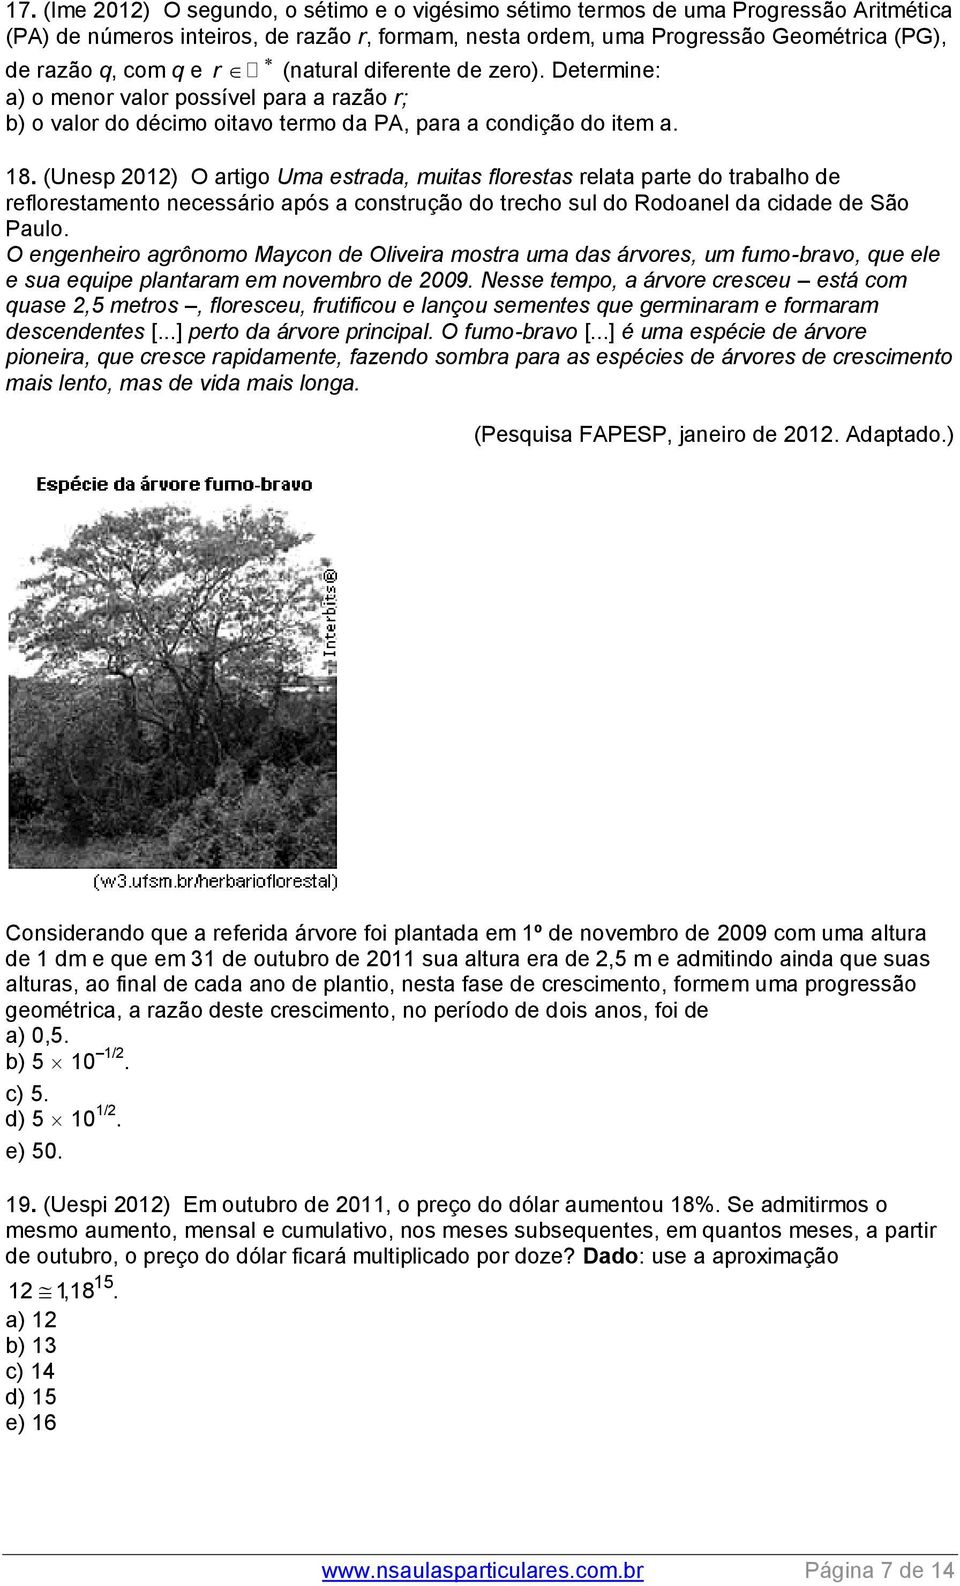 (Uesp 01) O artigo Uma estrada, muitas florestas relata parte do trabalho de reflorestameto ecessário após a costrução do trecho sul do Rodoael da cidade de São Paulo.